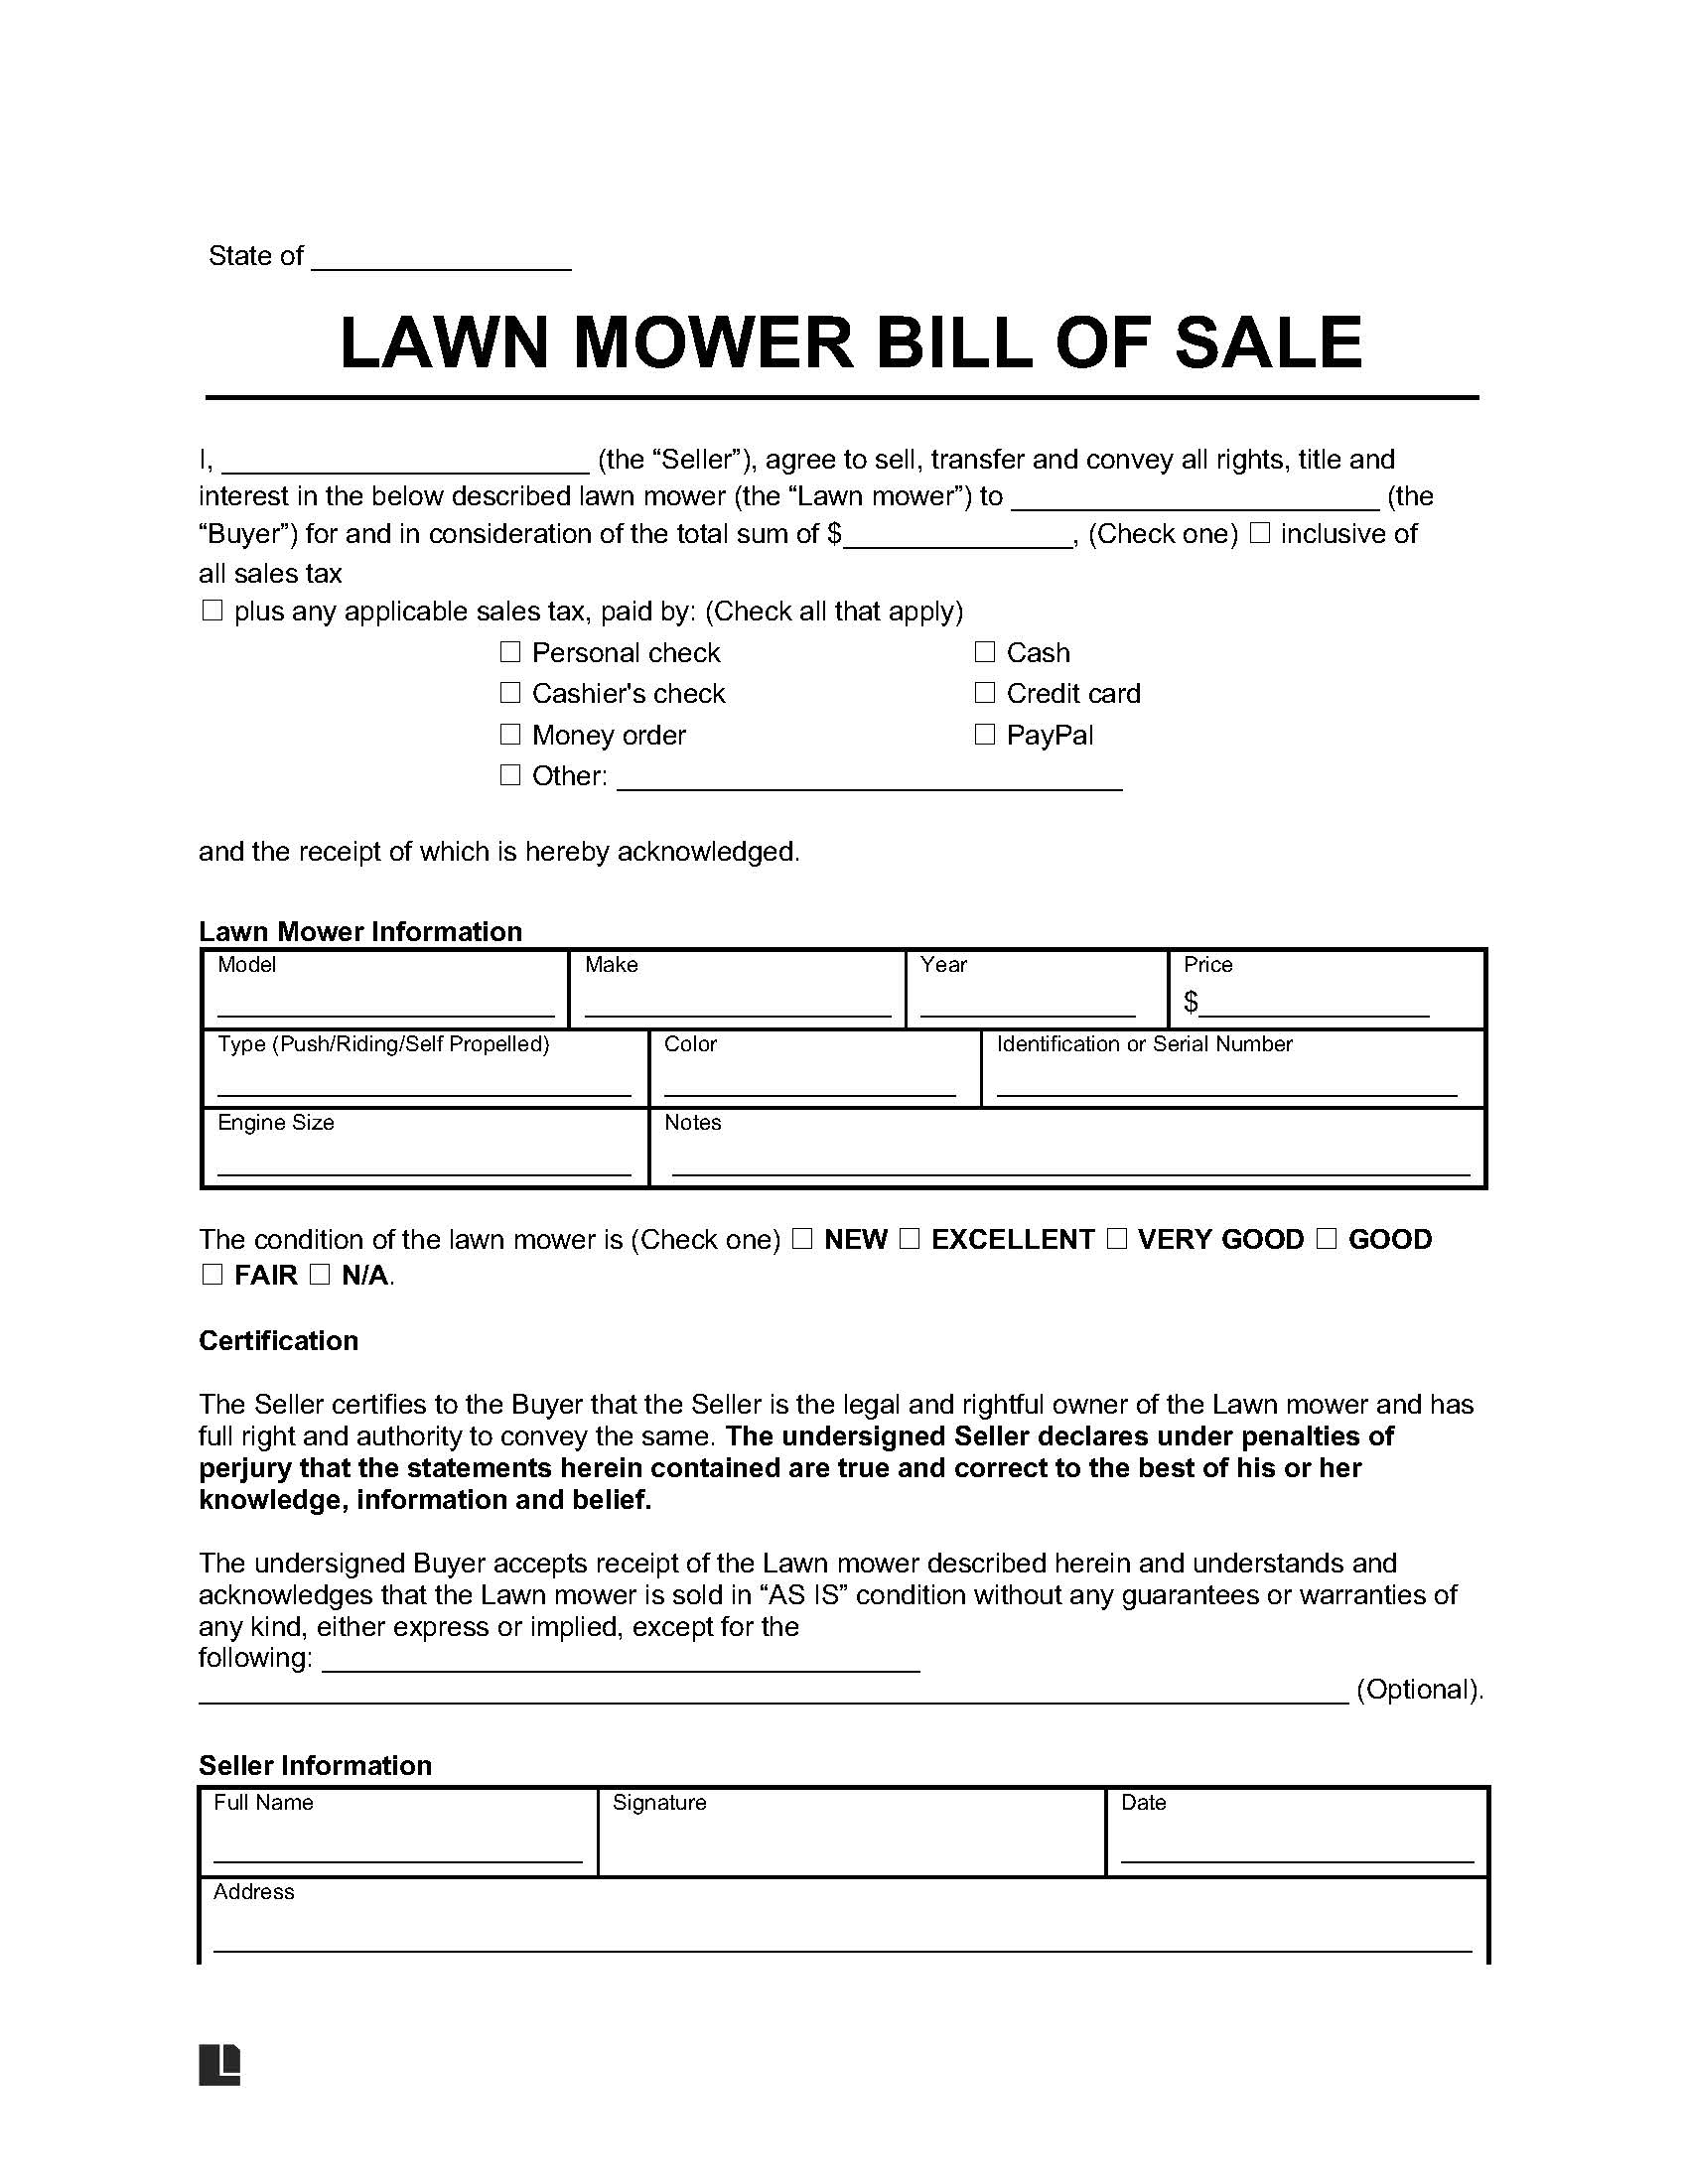 lawnmower bill of sale